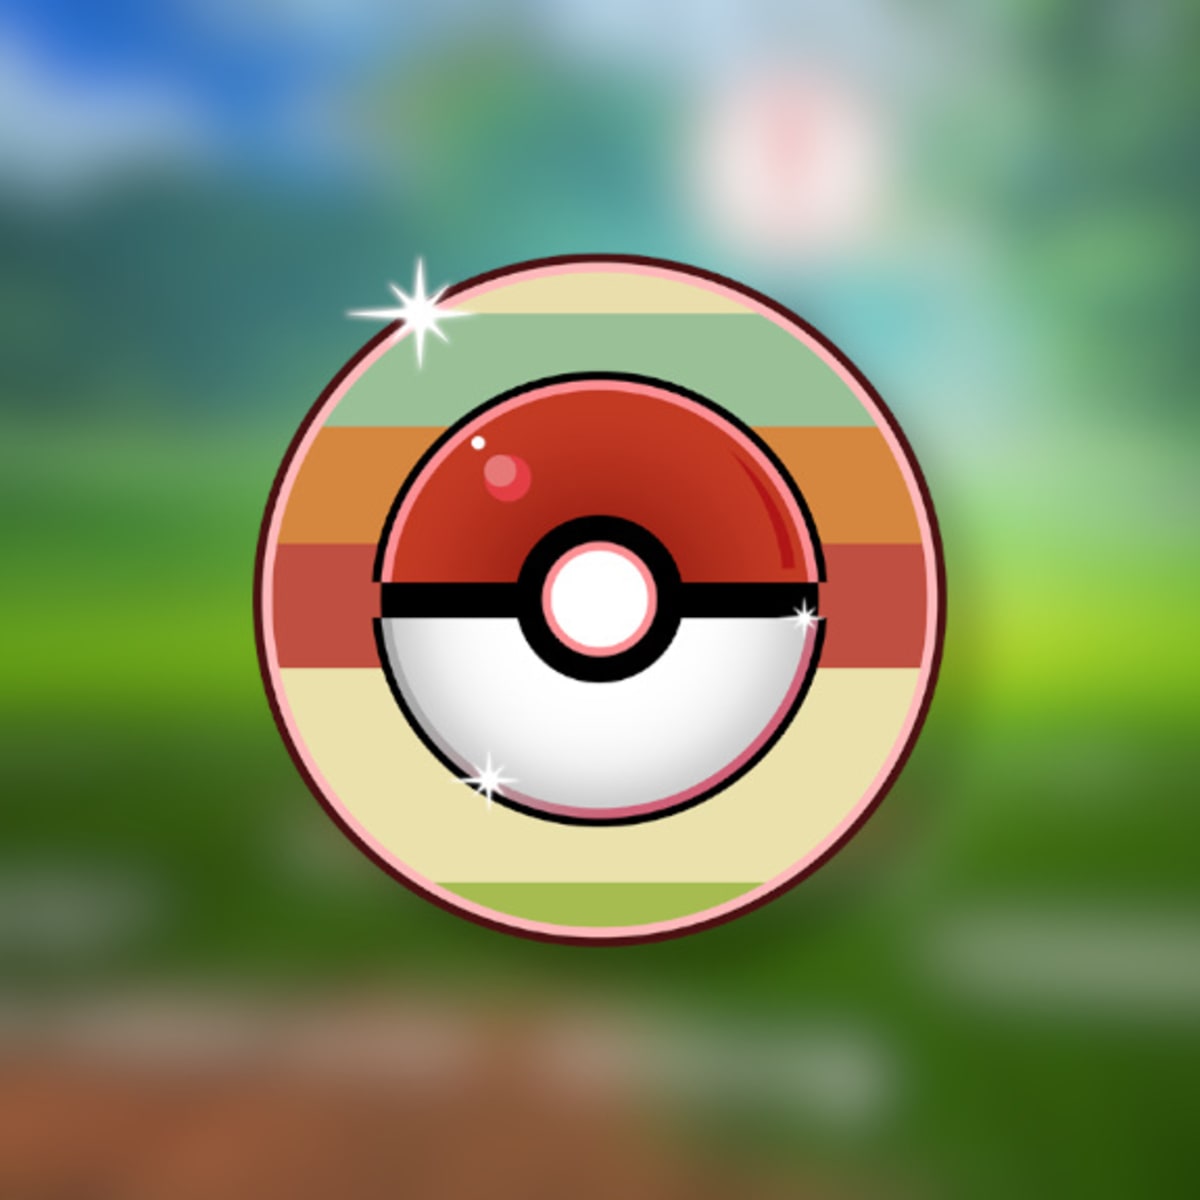 Pokémon GO: conheça os melhores pokémons de cada tipo! (2023) - Liga dos  Games